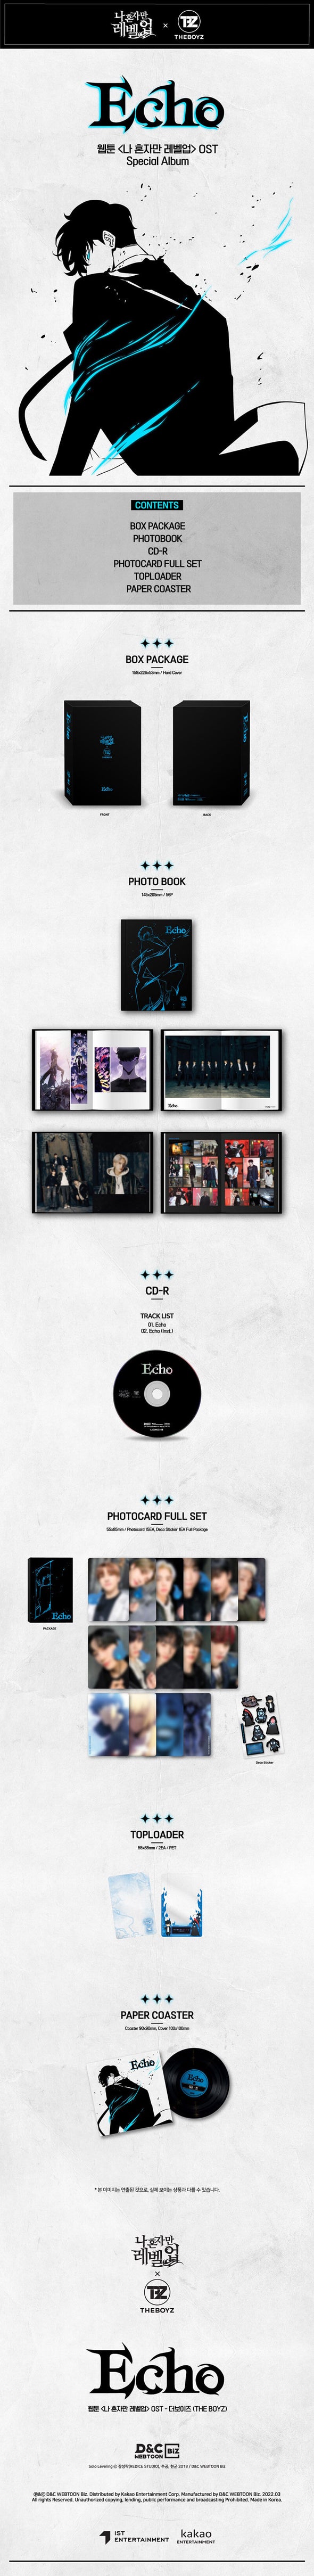 THE BOYZ - Solo Leveling OST Album Echo